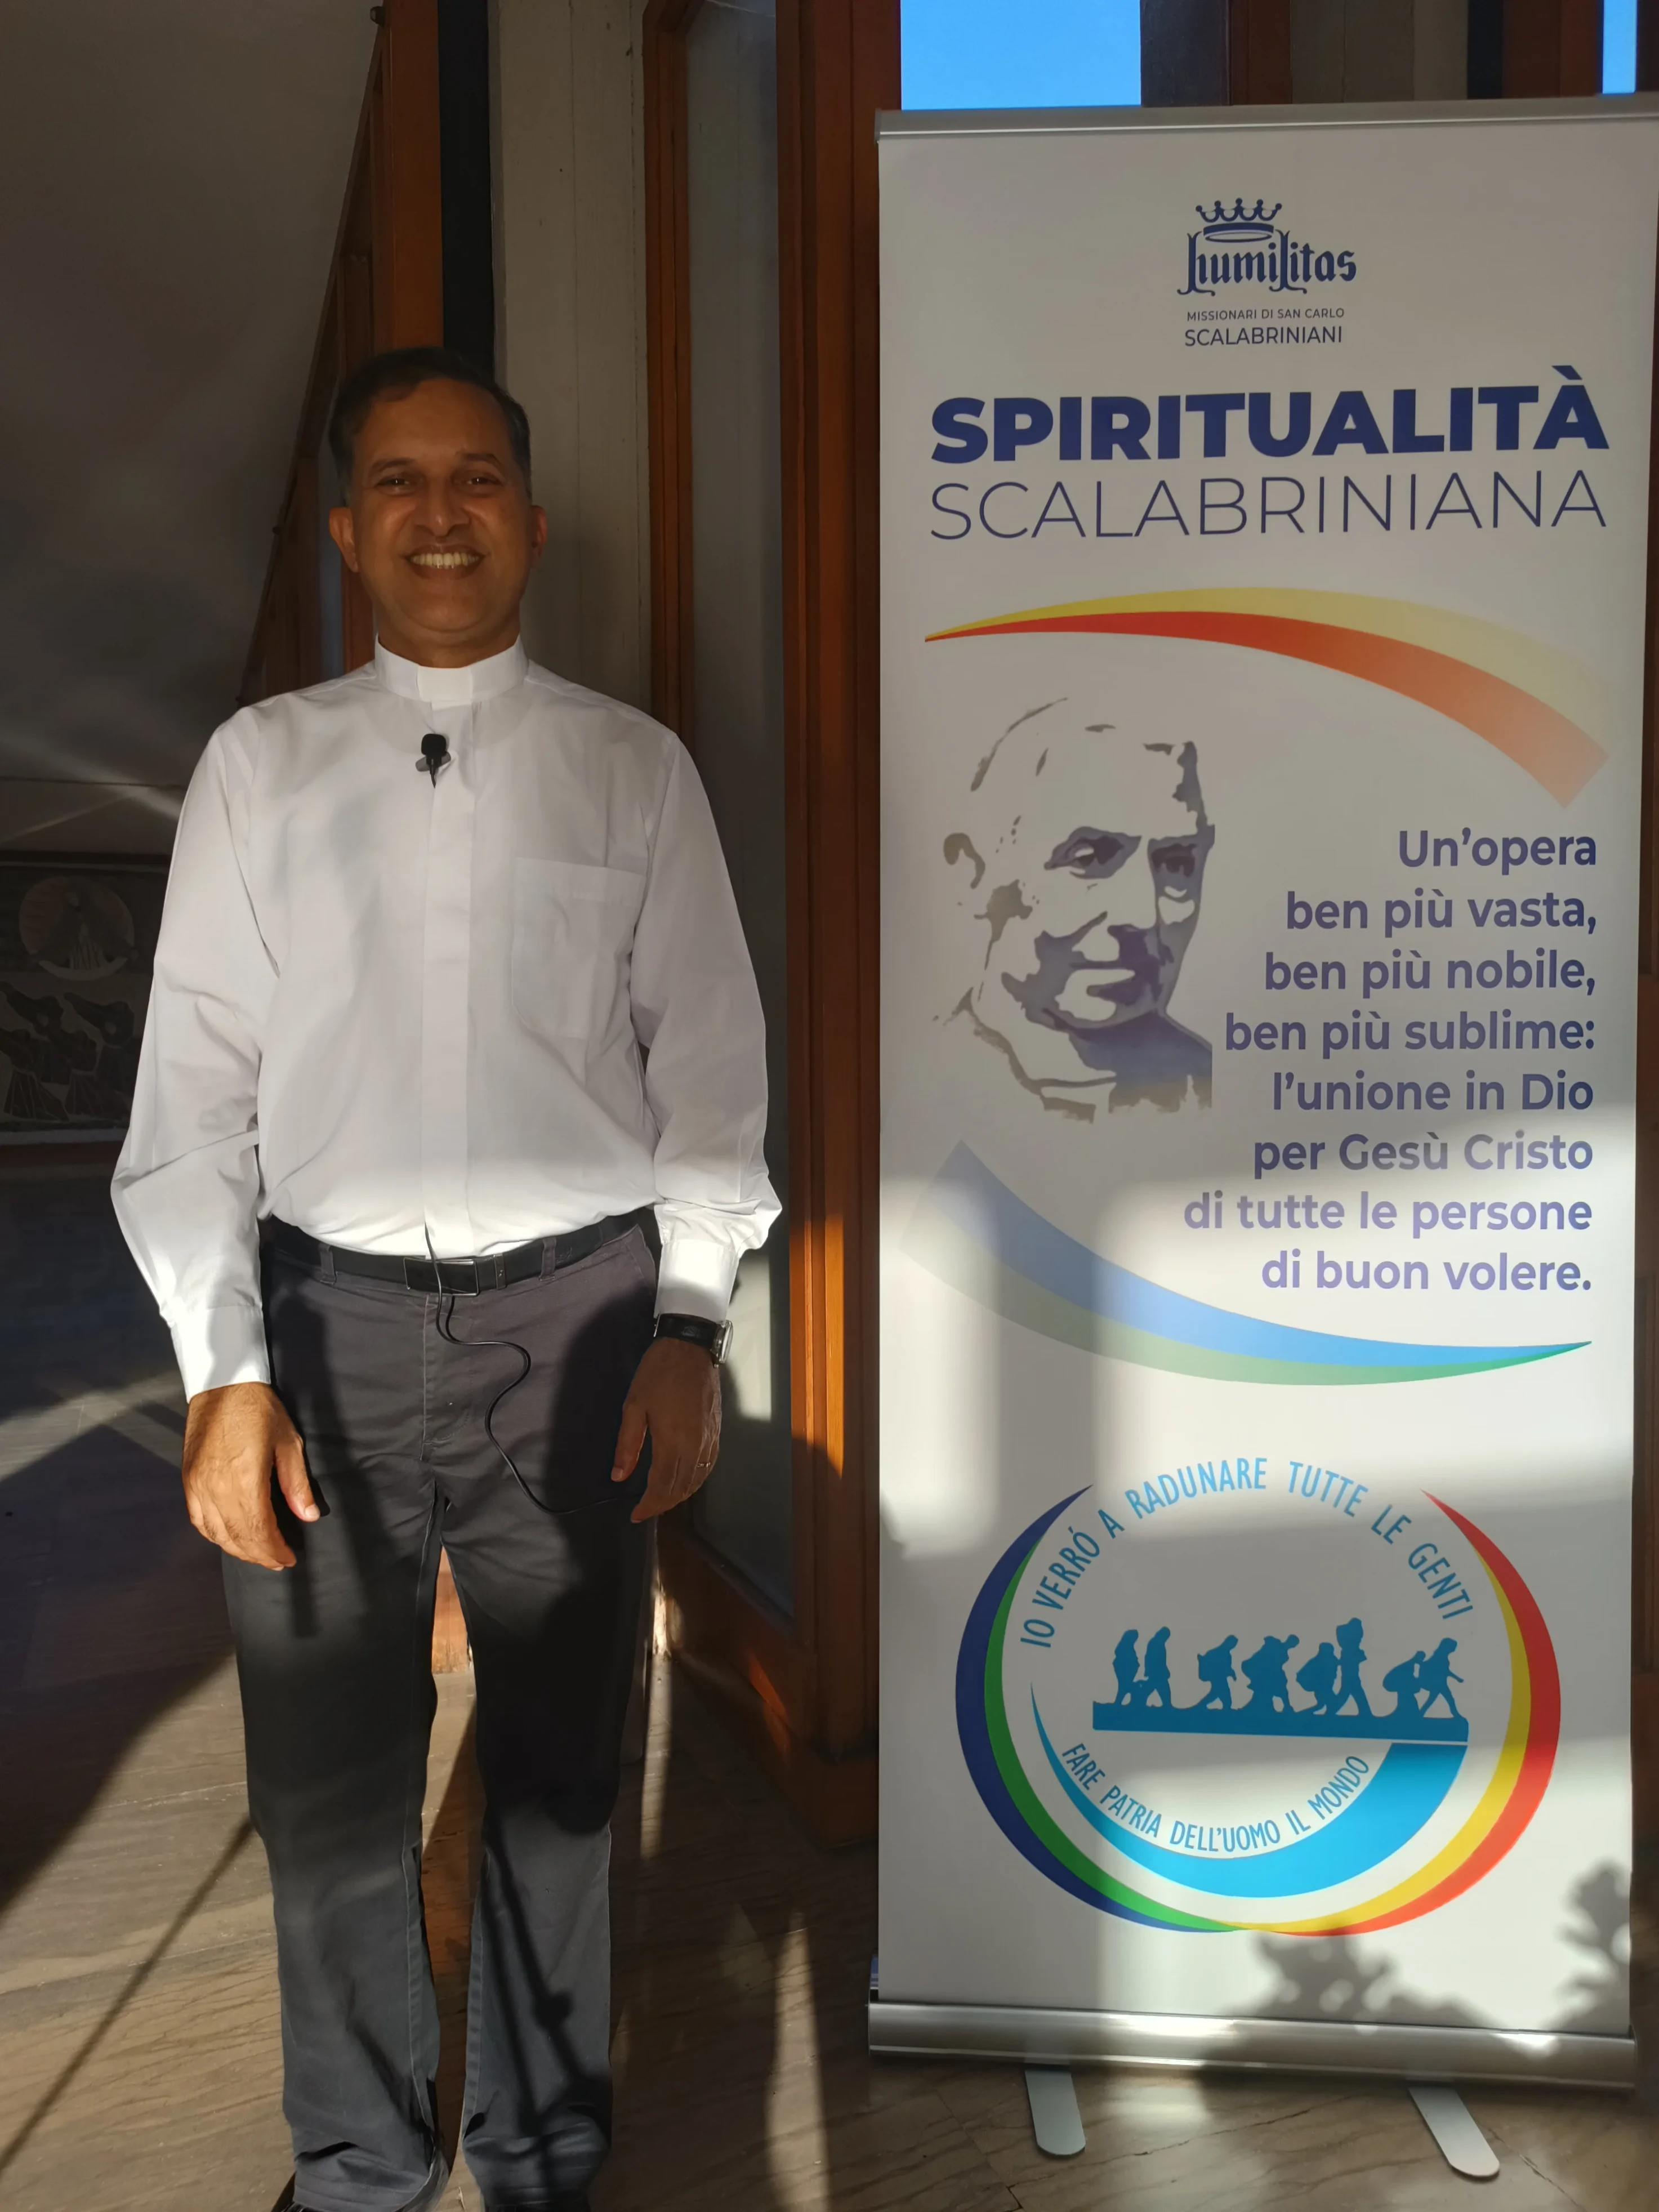 Symposium on Spirituality